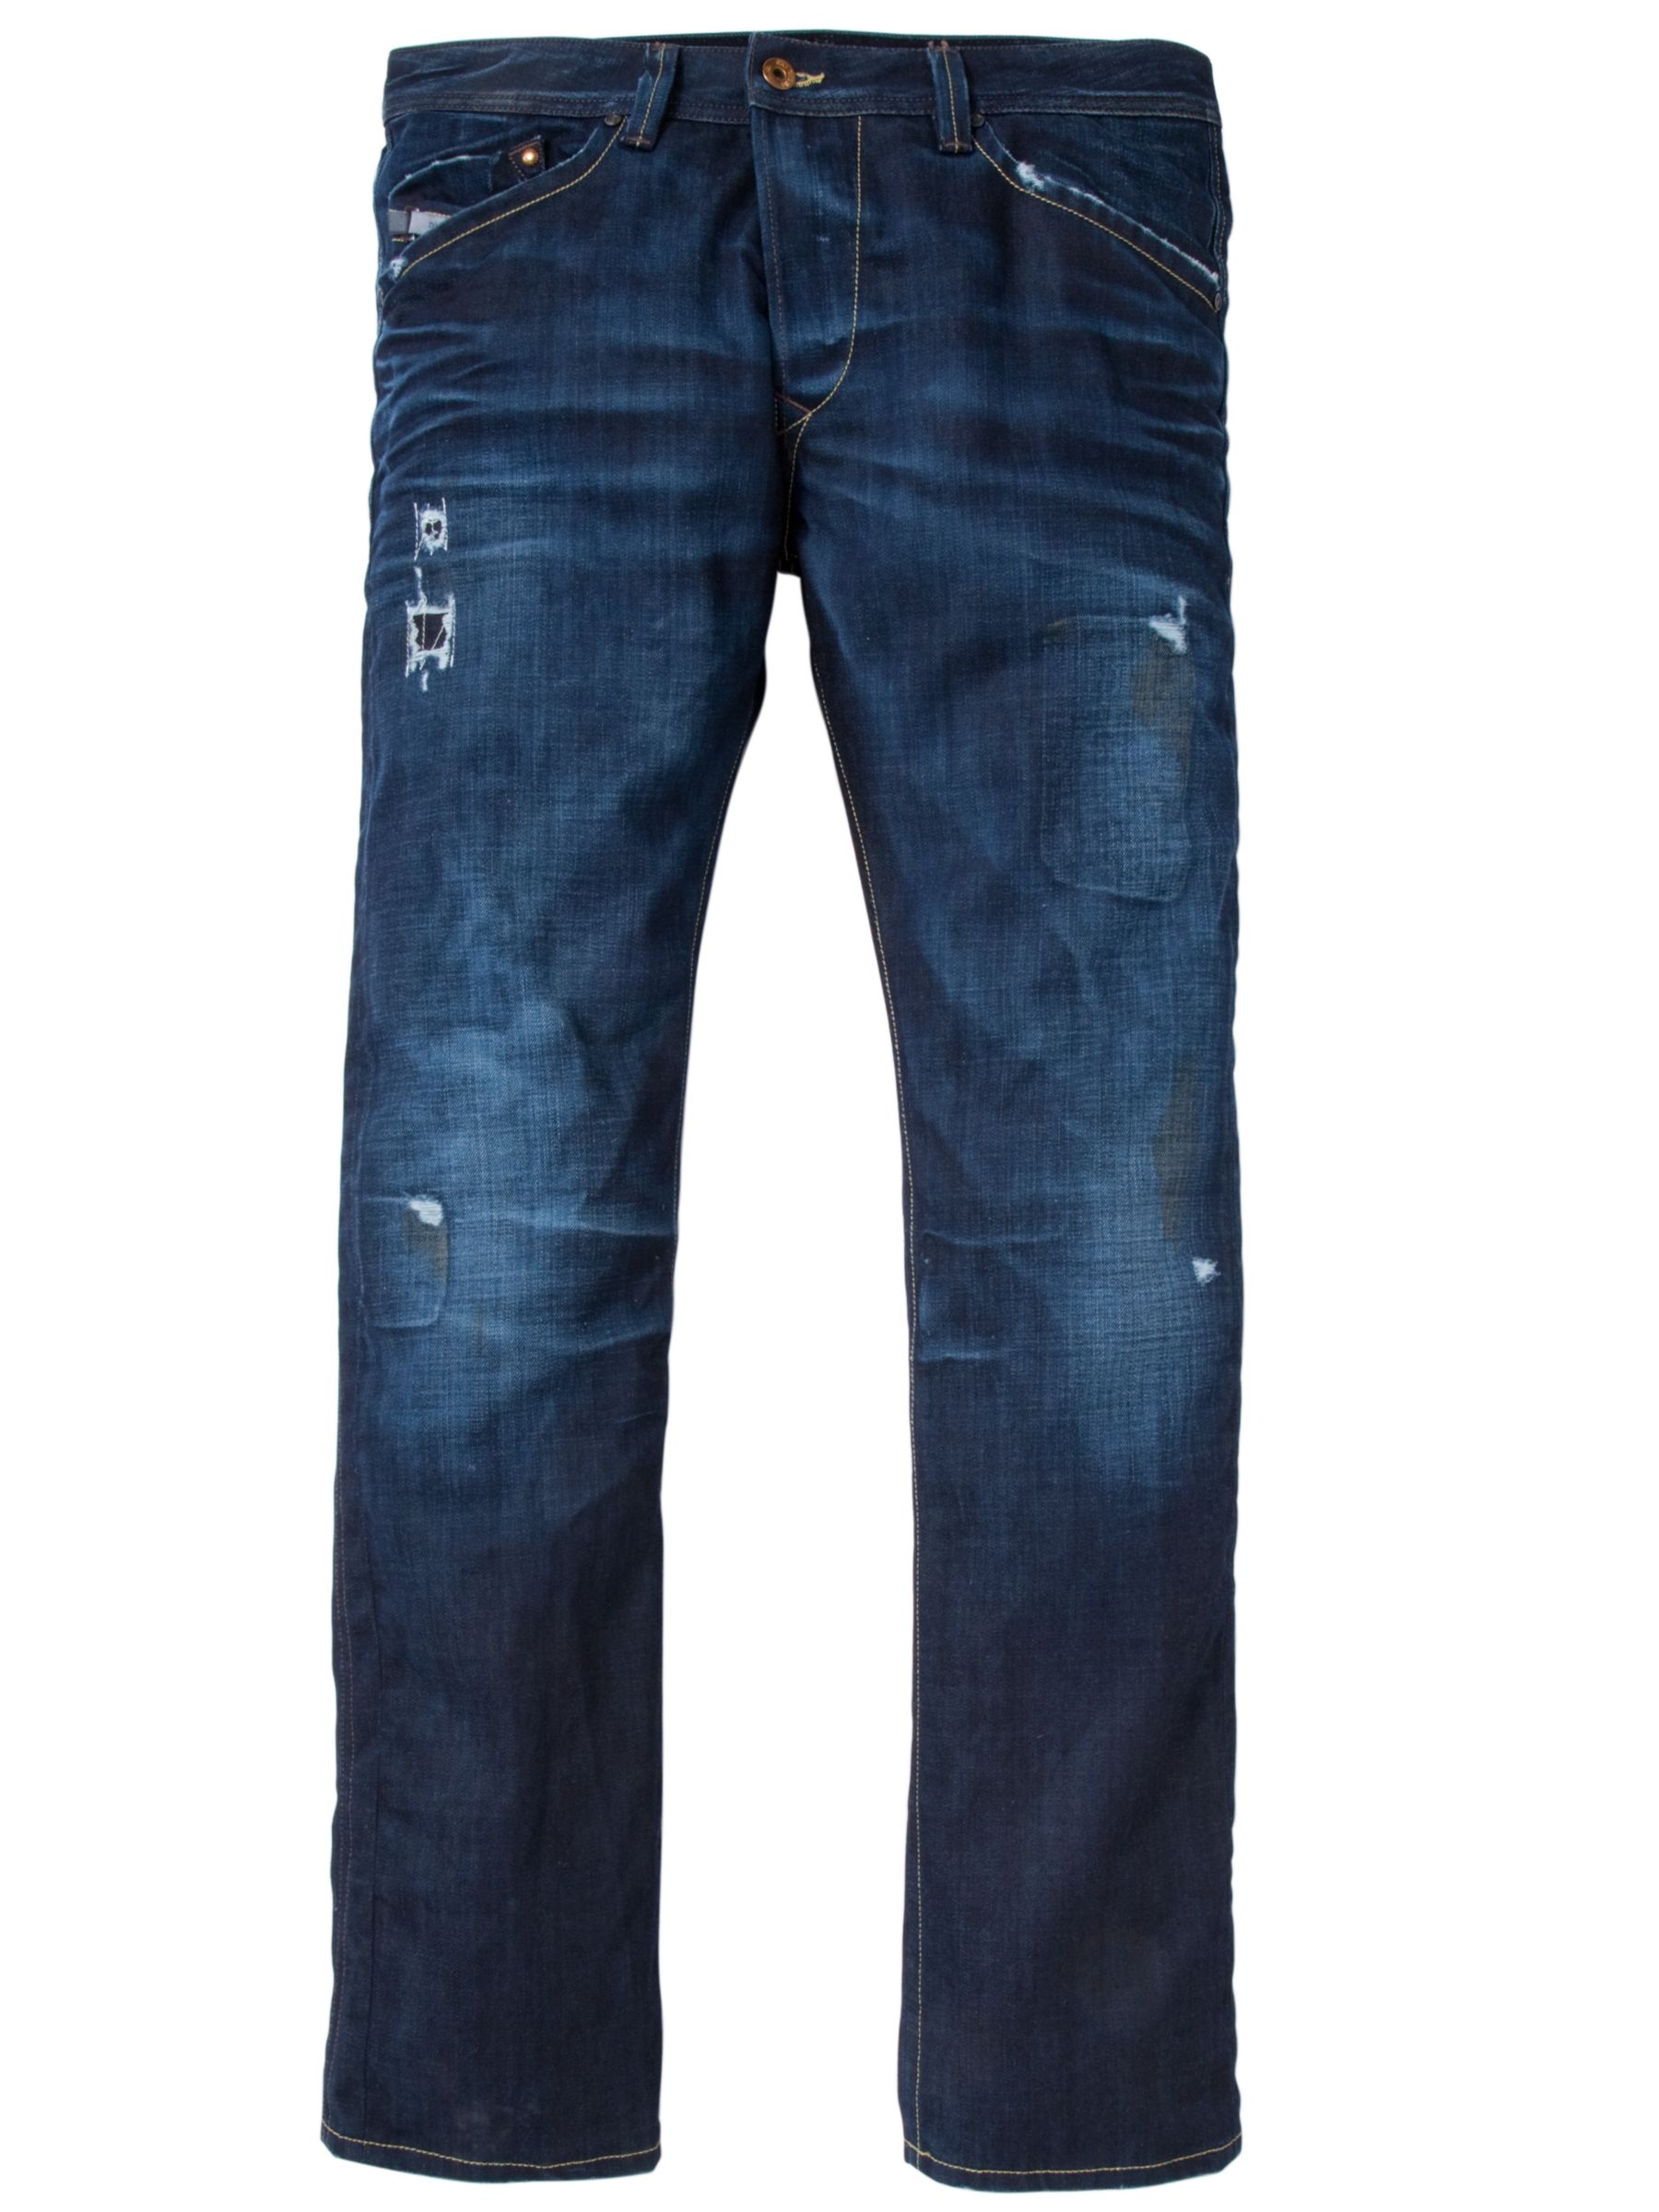 Diesel Darron Regular Slim Fit Jeans, Rinse Used at John Lewis